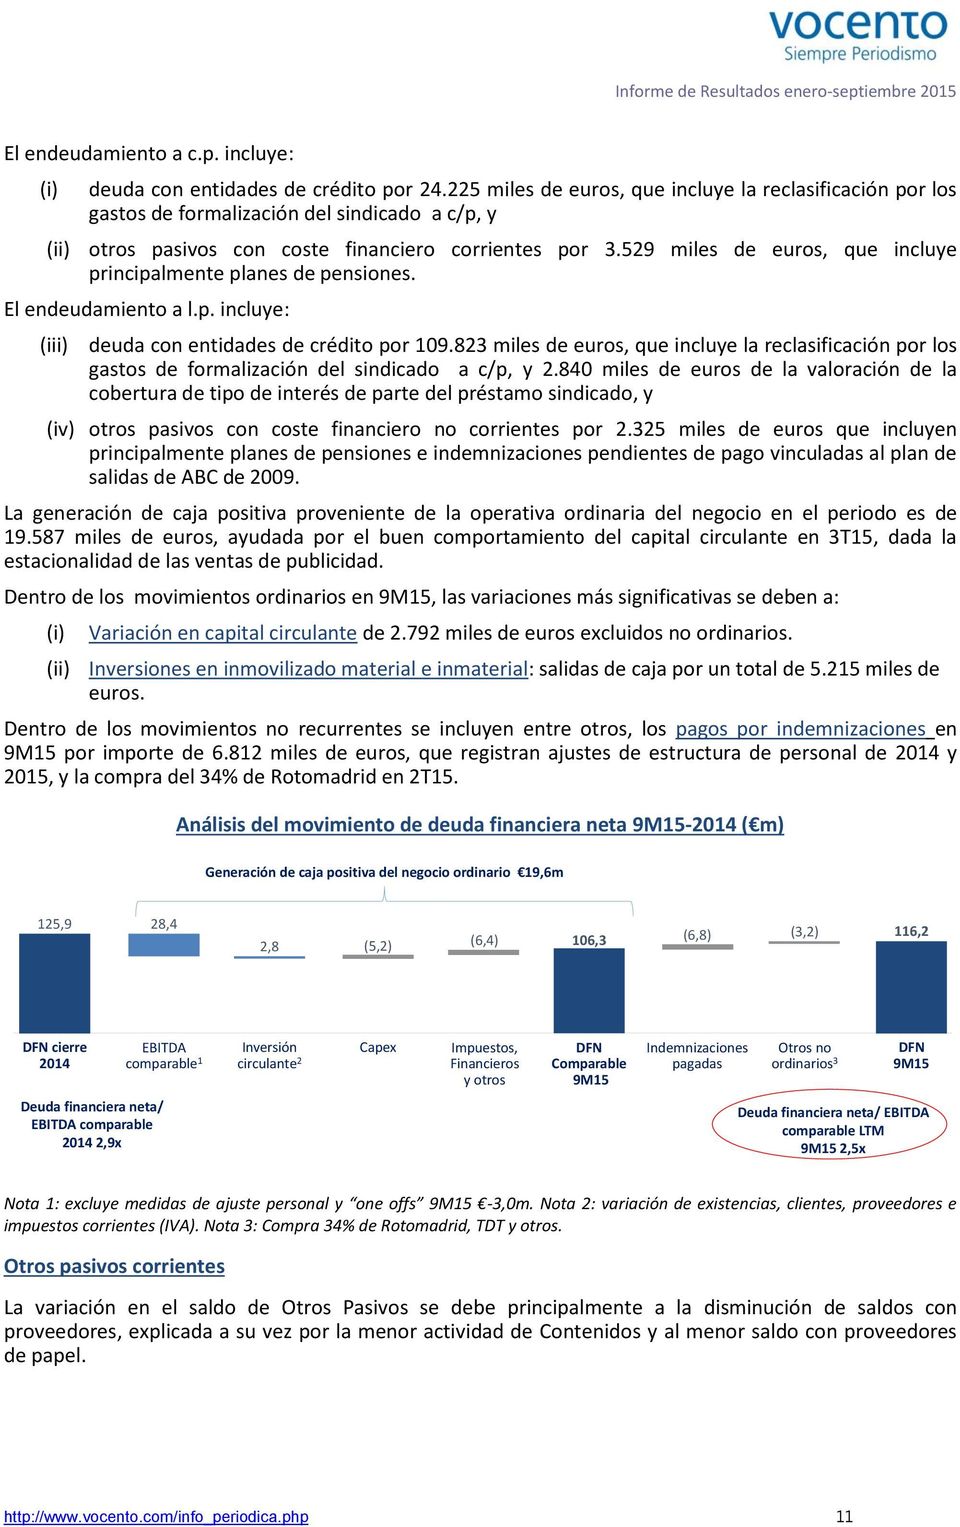 529 miles de euros, que incluye principalmente planes de pensiones. El endeudamiento a l.p. incluye: (iii) deuda con entidades de crédito por 109.